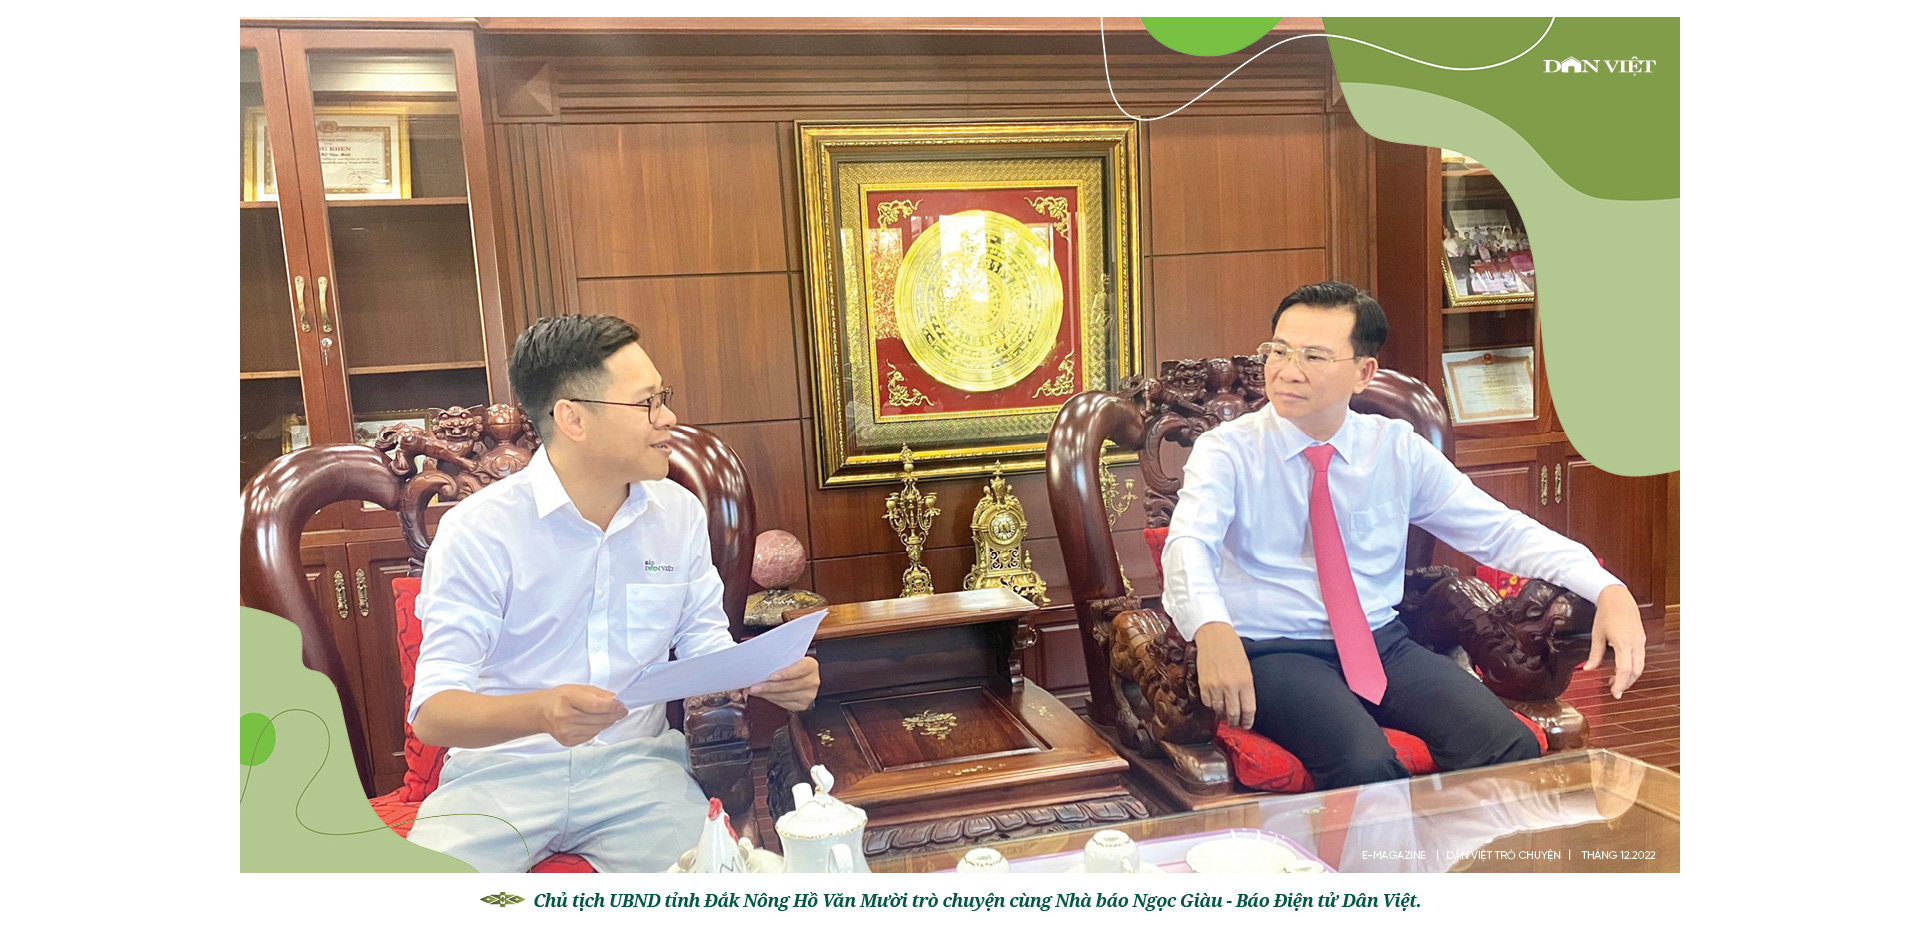 Chủ tịch UBND tỉnh Đắk Nông Hồ Văn Mười: “Đắc Nông vừa đi vừa chạy, vấp ngã cũng đứng lên” - Ảnh 5.